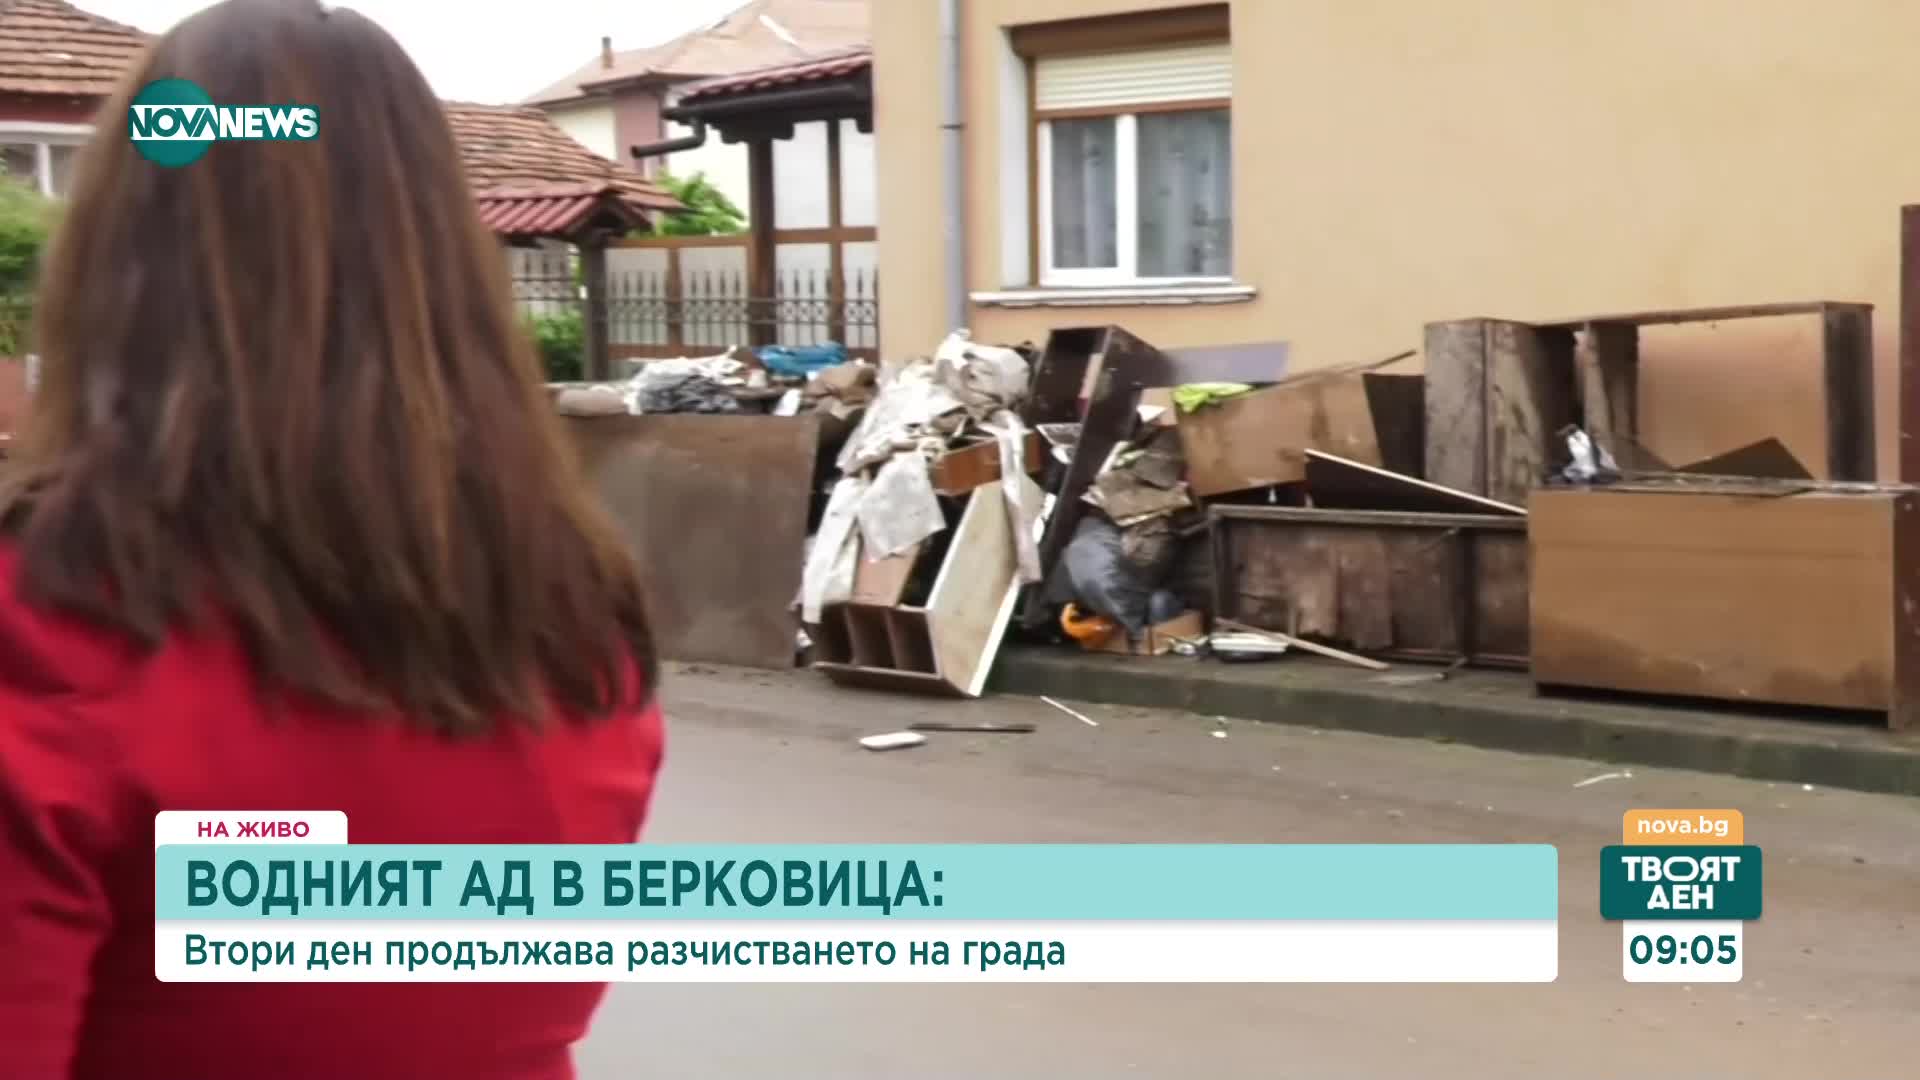 ВОДНИЯТ АД В БЕРКОВИЦА: Втори ден продължава разчистването на града